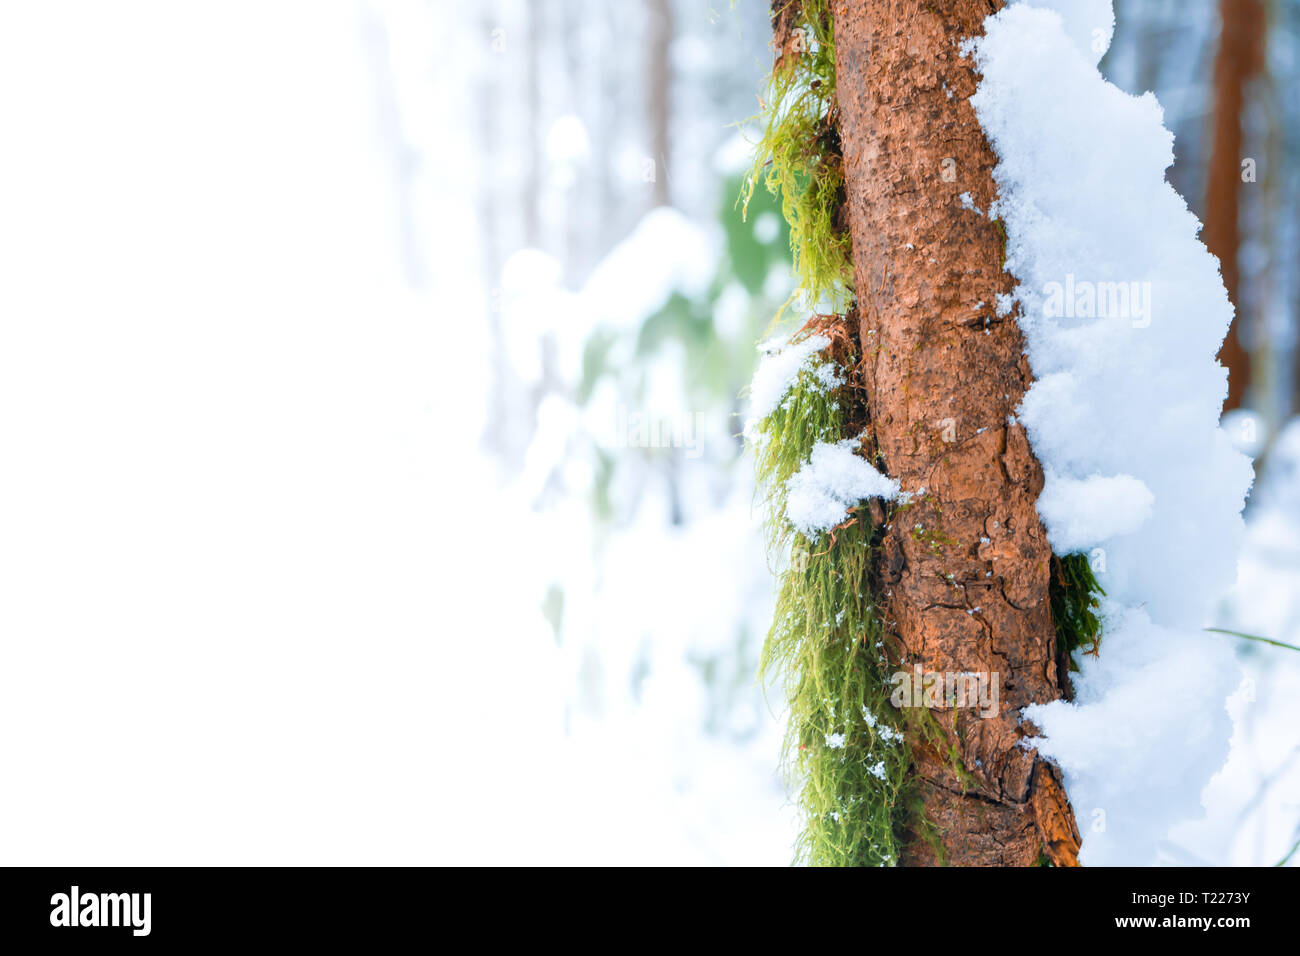 Anzeige Raum (Raum für Text, oder Platz kopieren) auf grünem Moos wächst auf Skinny brauner Baumstamm mit Schnee, der rechten Seite, in einem Wald Moor, nach einem Schnee Stockfoto